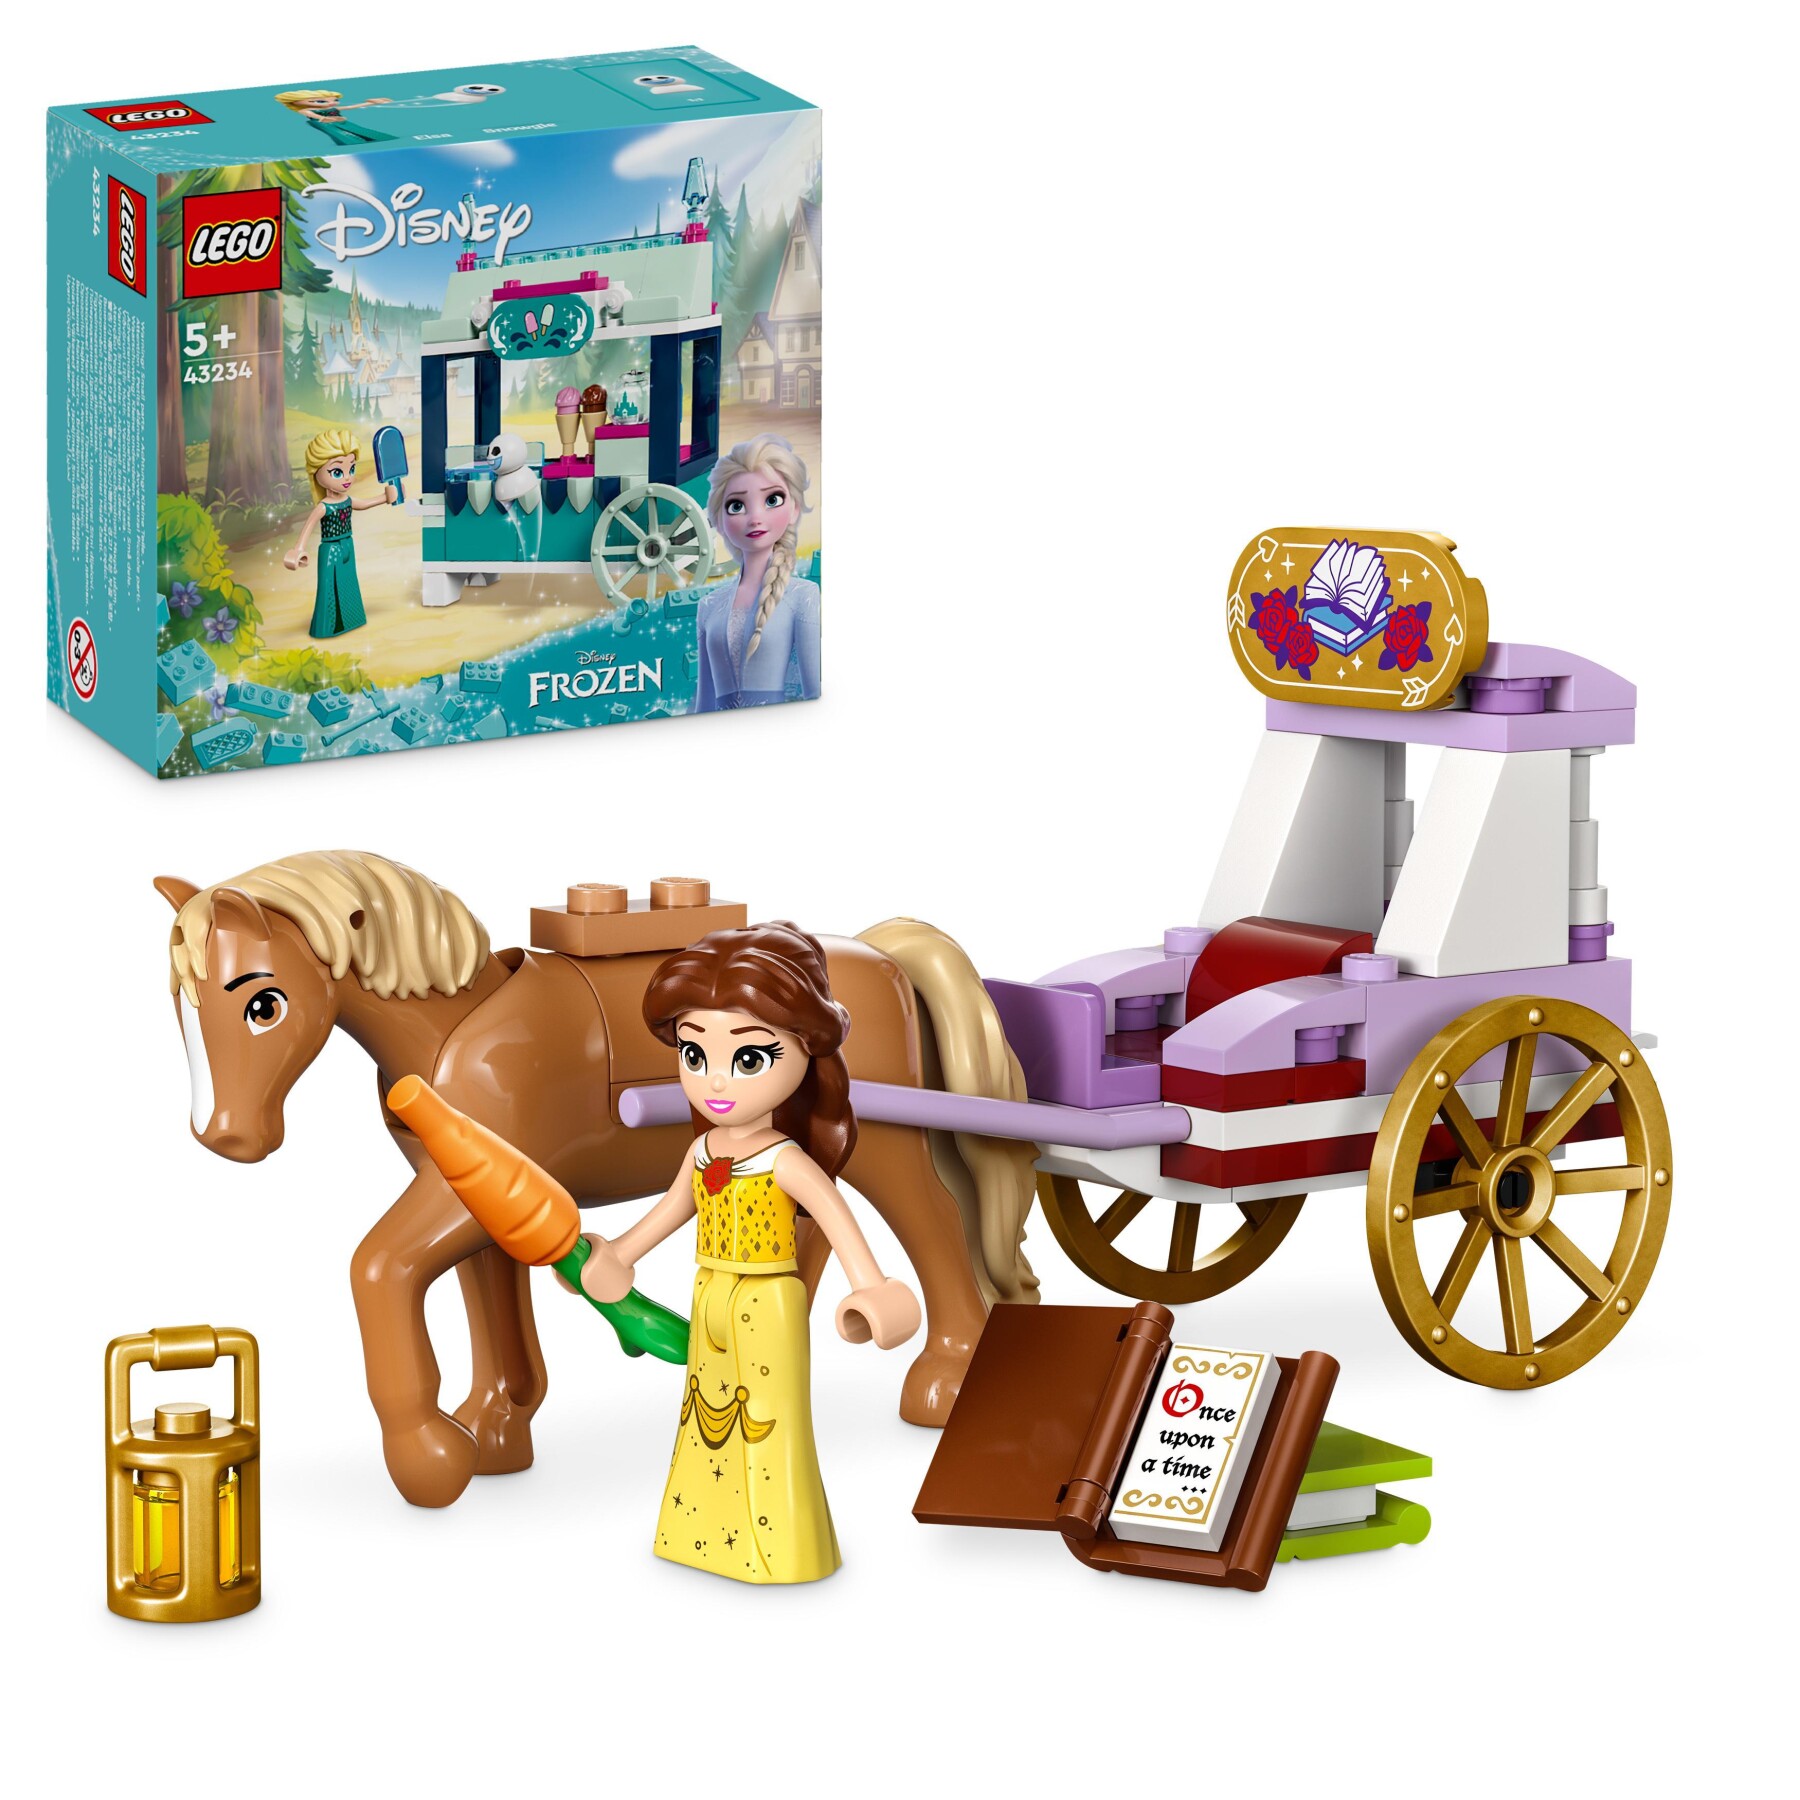 Lego disney princess 43233 la carrozza dei cavalli di belle, giochi principesse per bambini di 5+ anni da la bella e la bestia - DISNEY PRINCESS, LEGO DISNEY PRINCESS